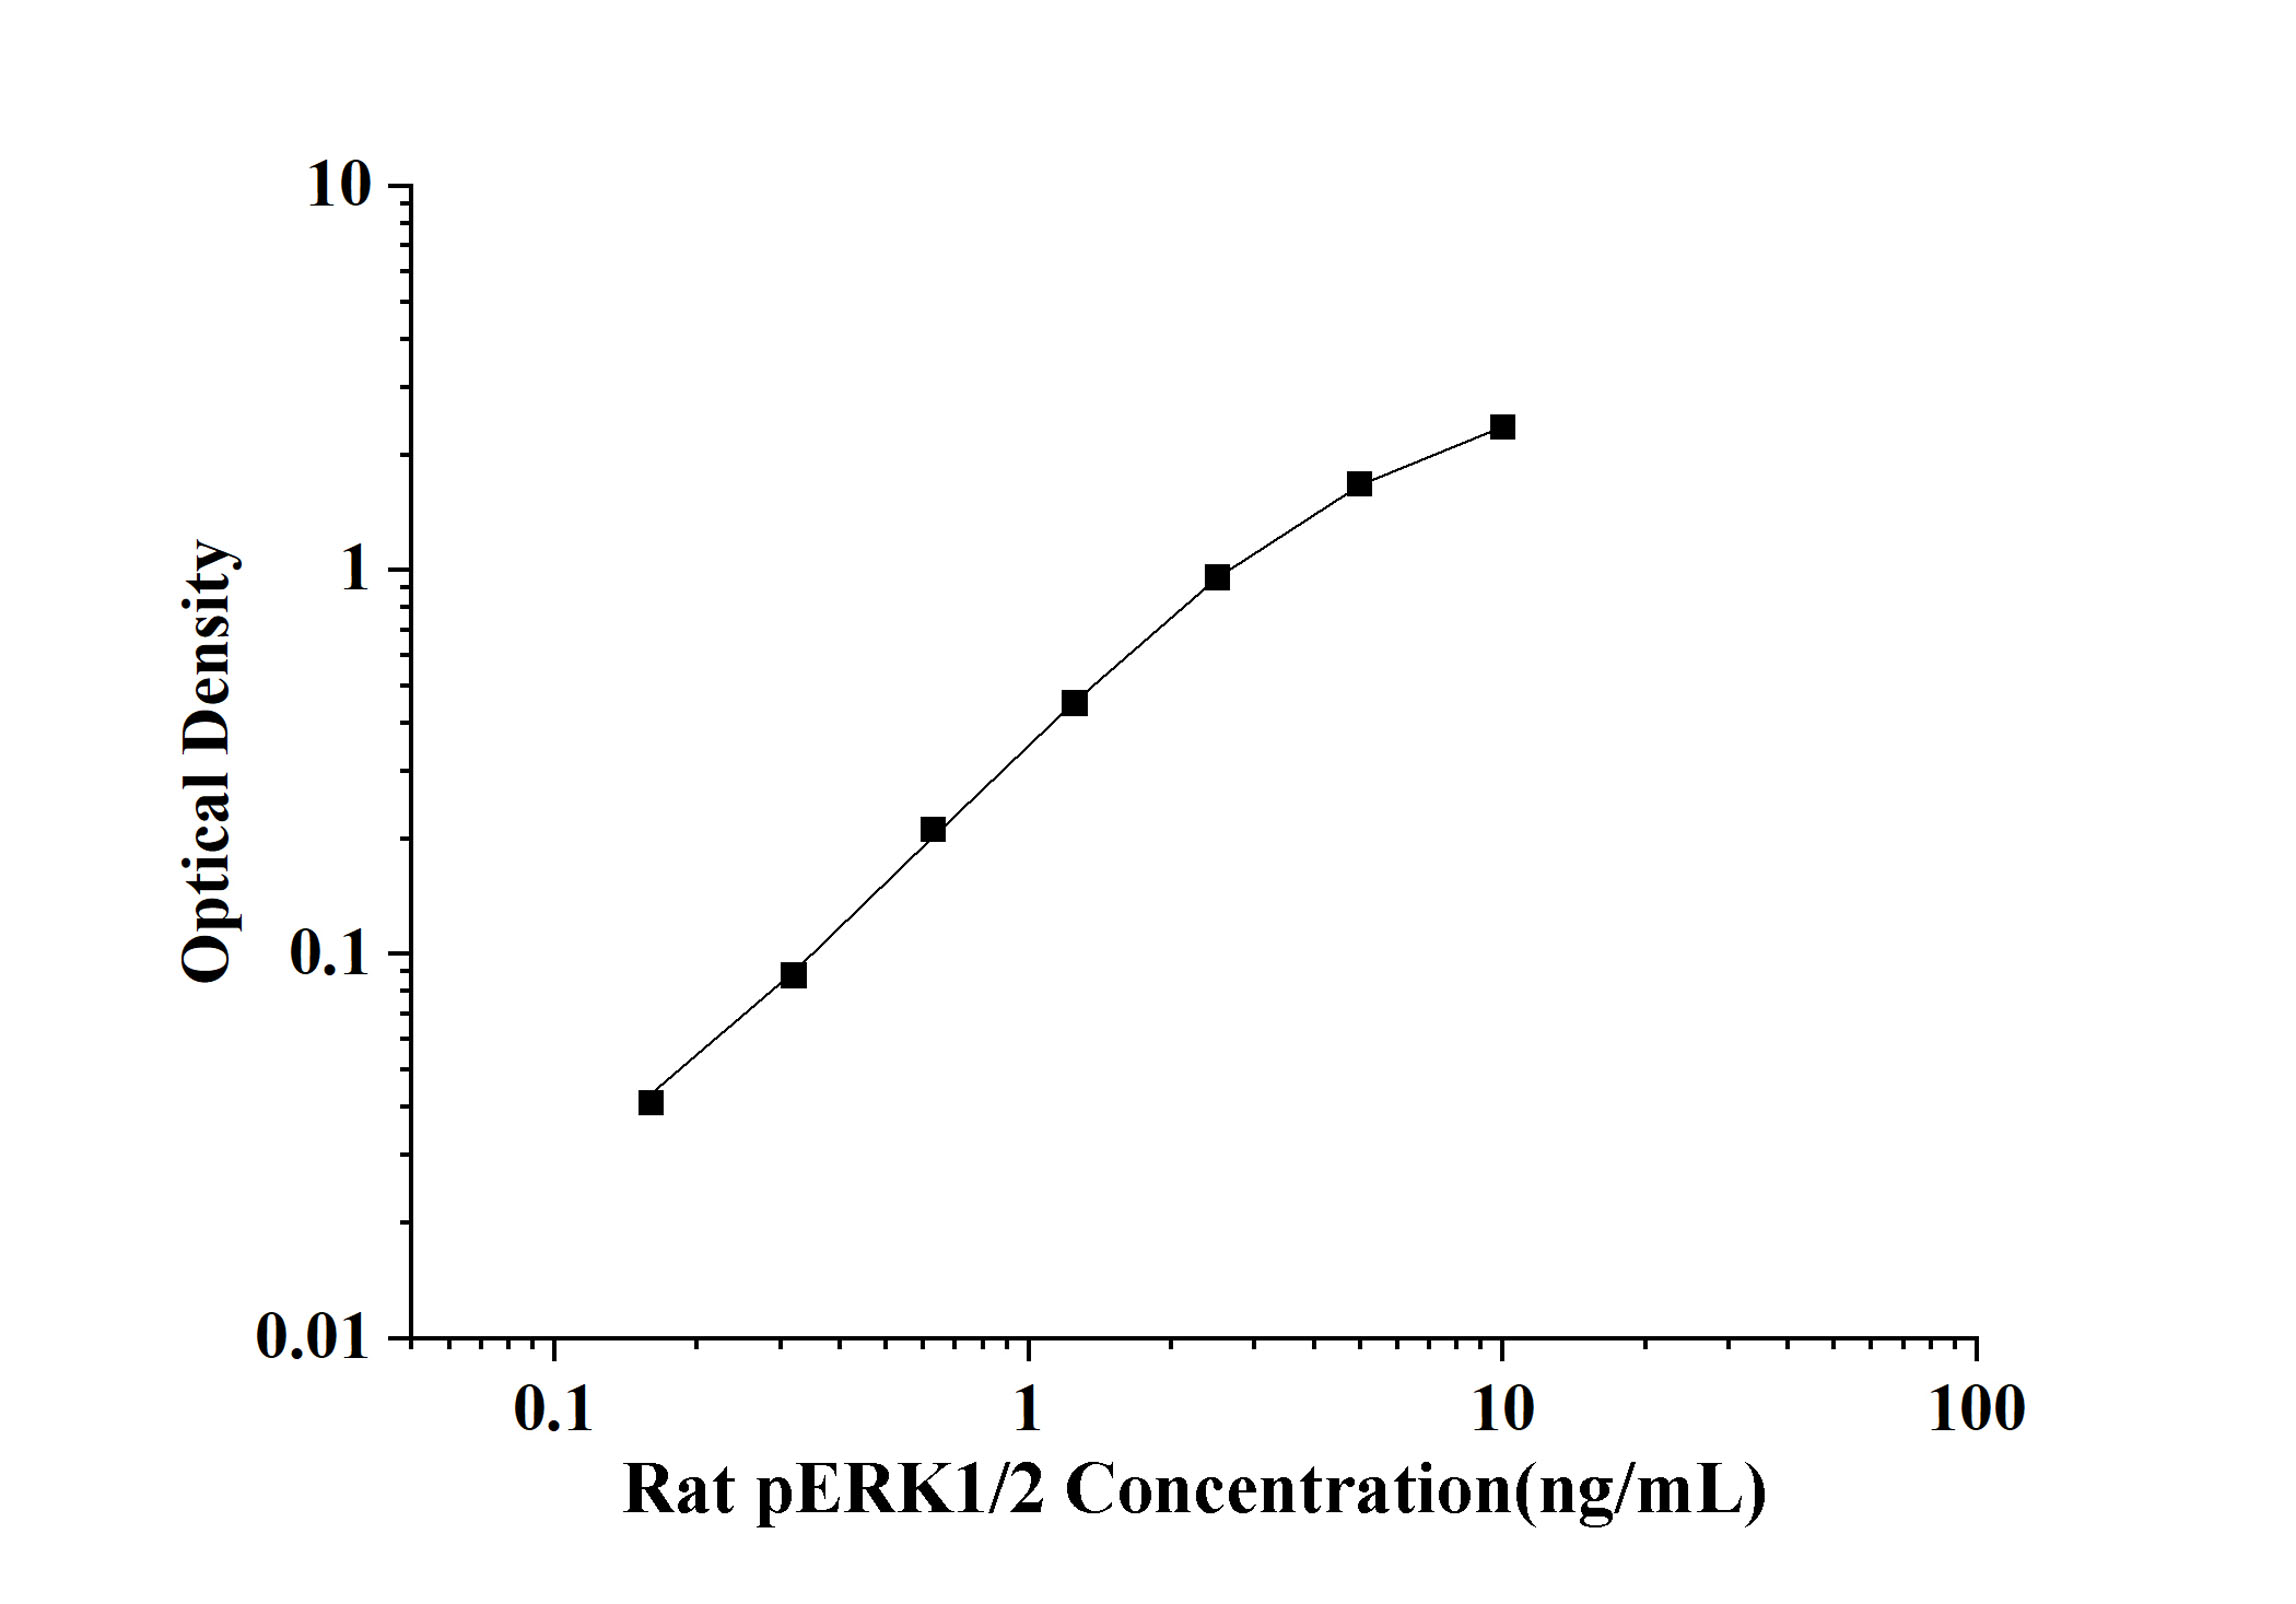 Rat pERK1/2(Phospho Extracellular Signal Regulated Kinase 1/2) ELISA Kit